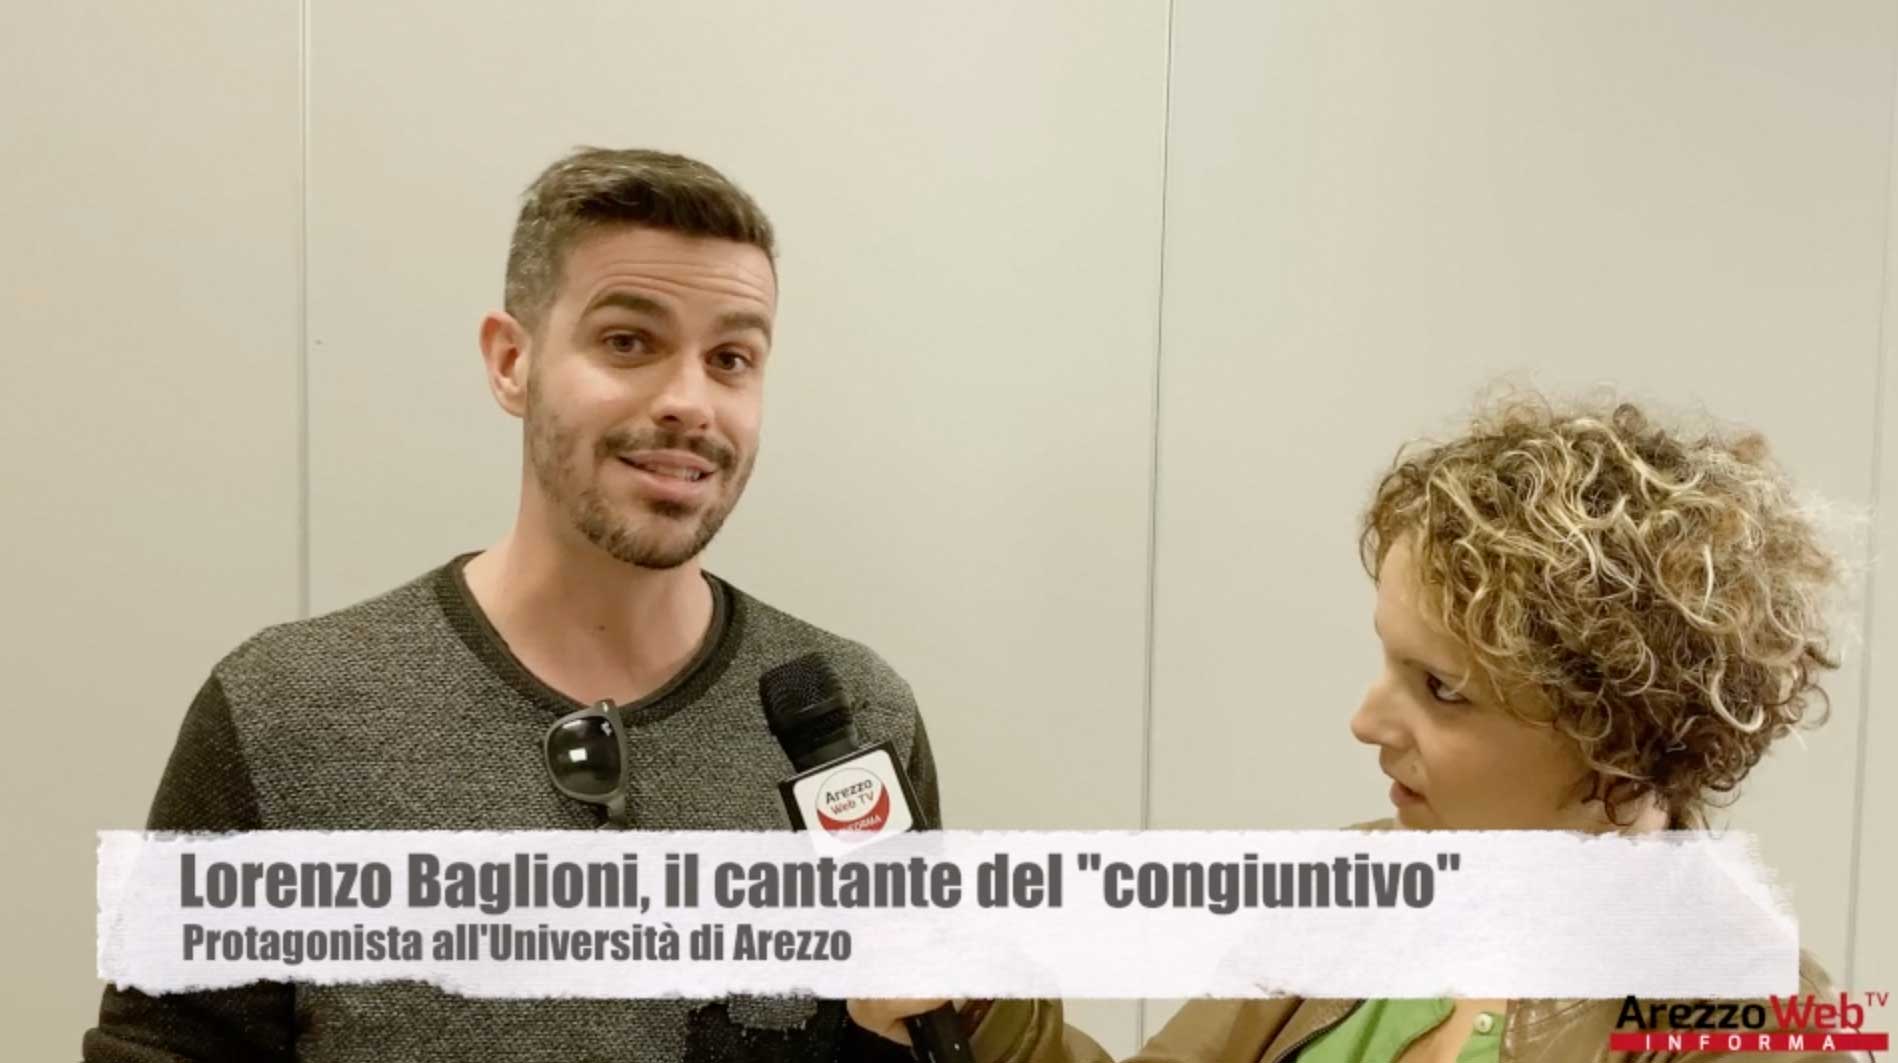 Lorenzo Baglioni, il cantante del “congiuntivo” oggi protagonista all’Università di Arezzo